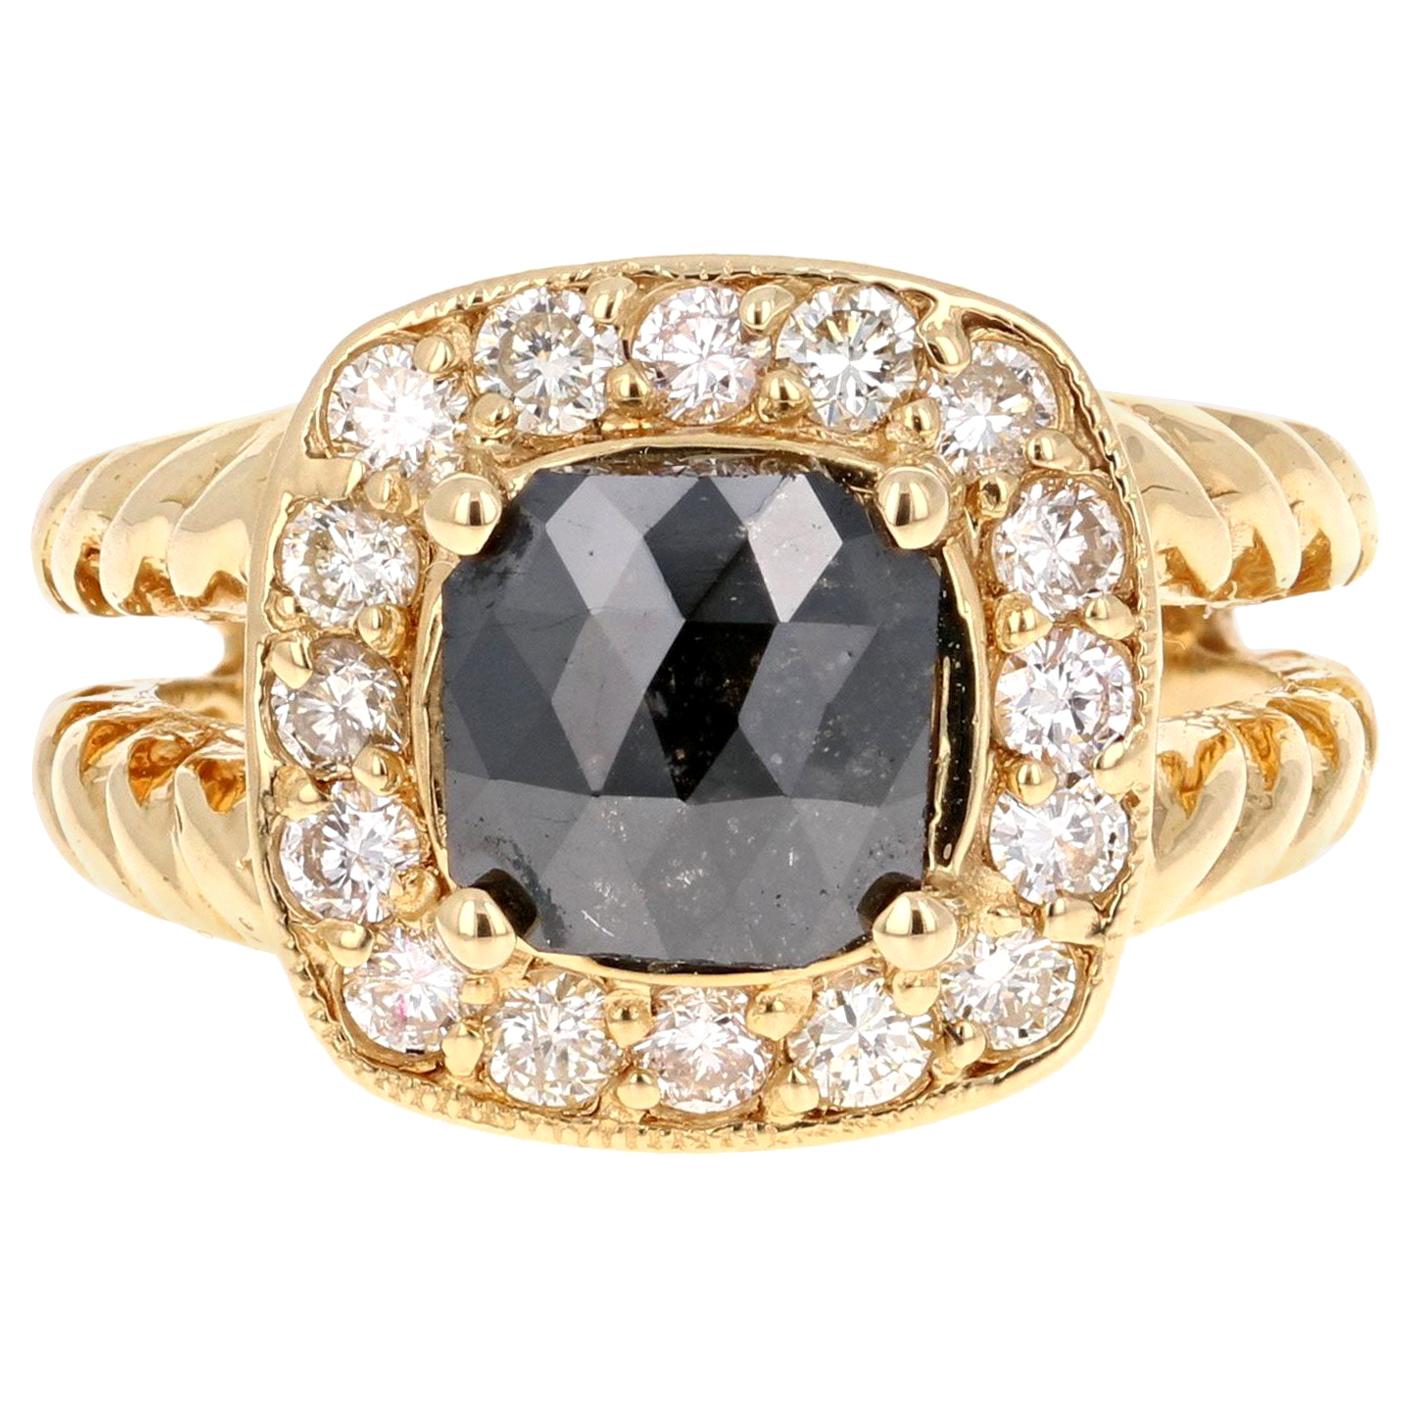 2.11 Carat Black Diamond 18 Karat Yellow Gold Bridal Ring